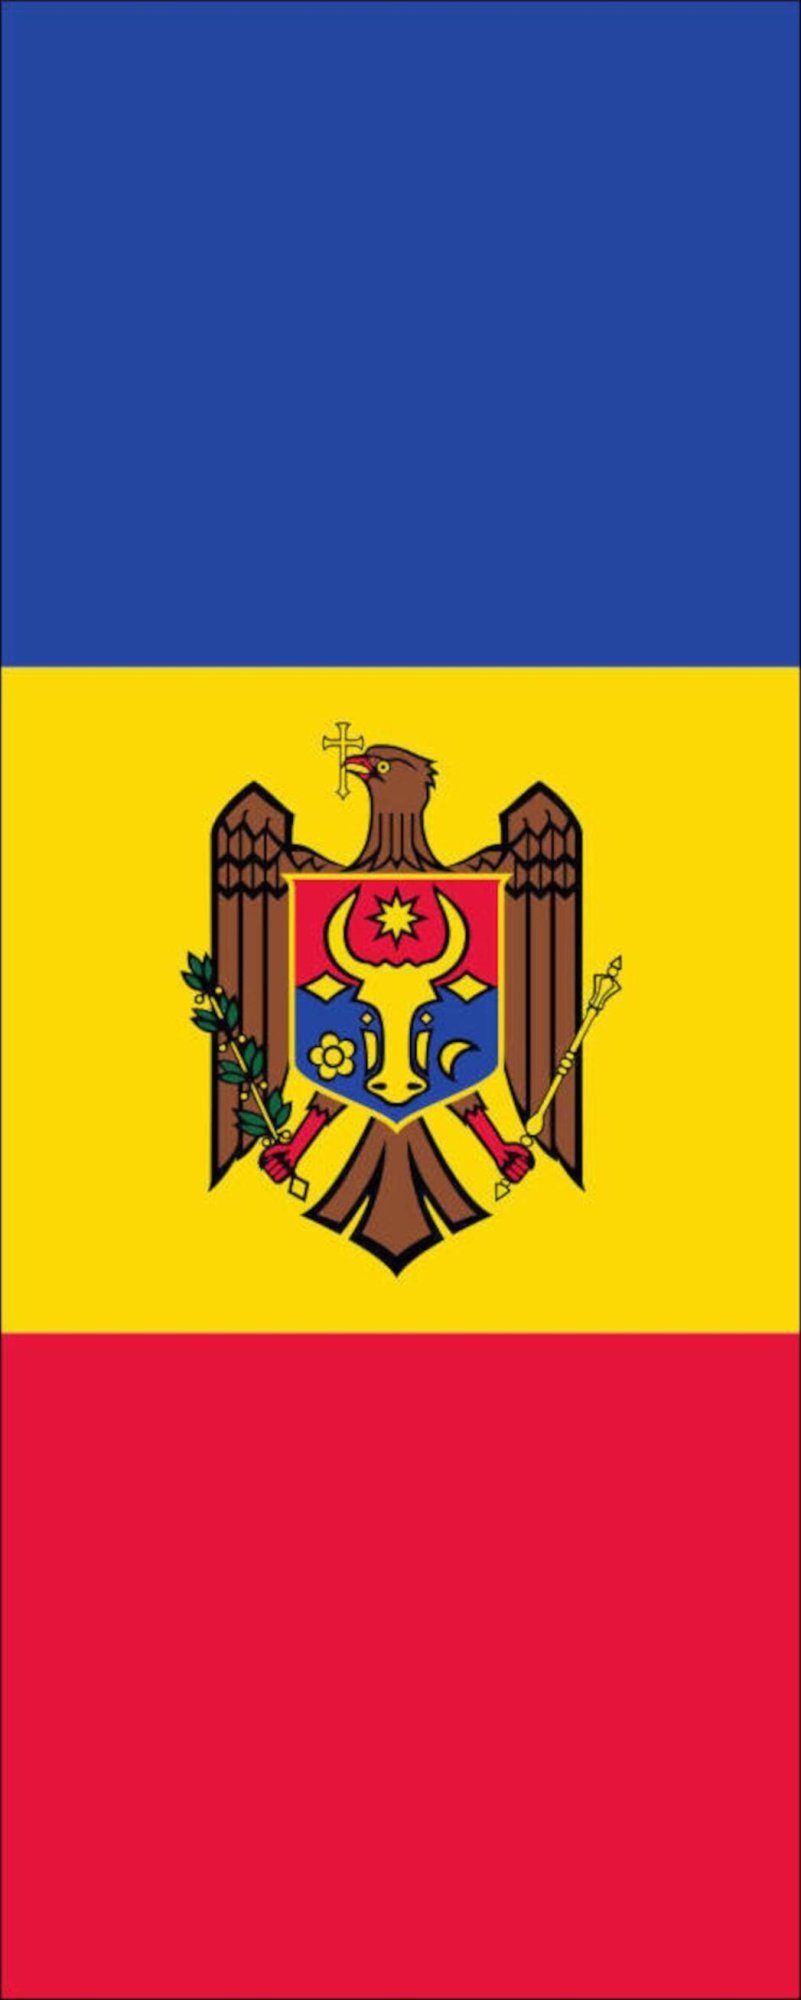 flaggenmeer Flagge Flagge Moldawien 110 g/m² Hochformat